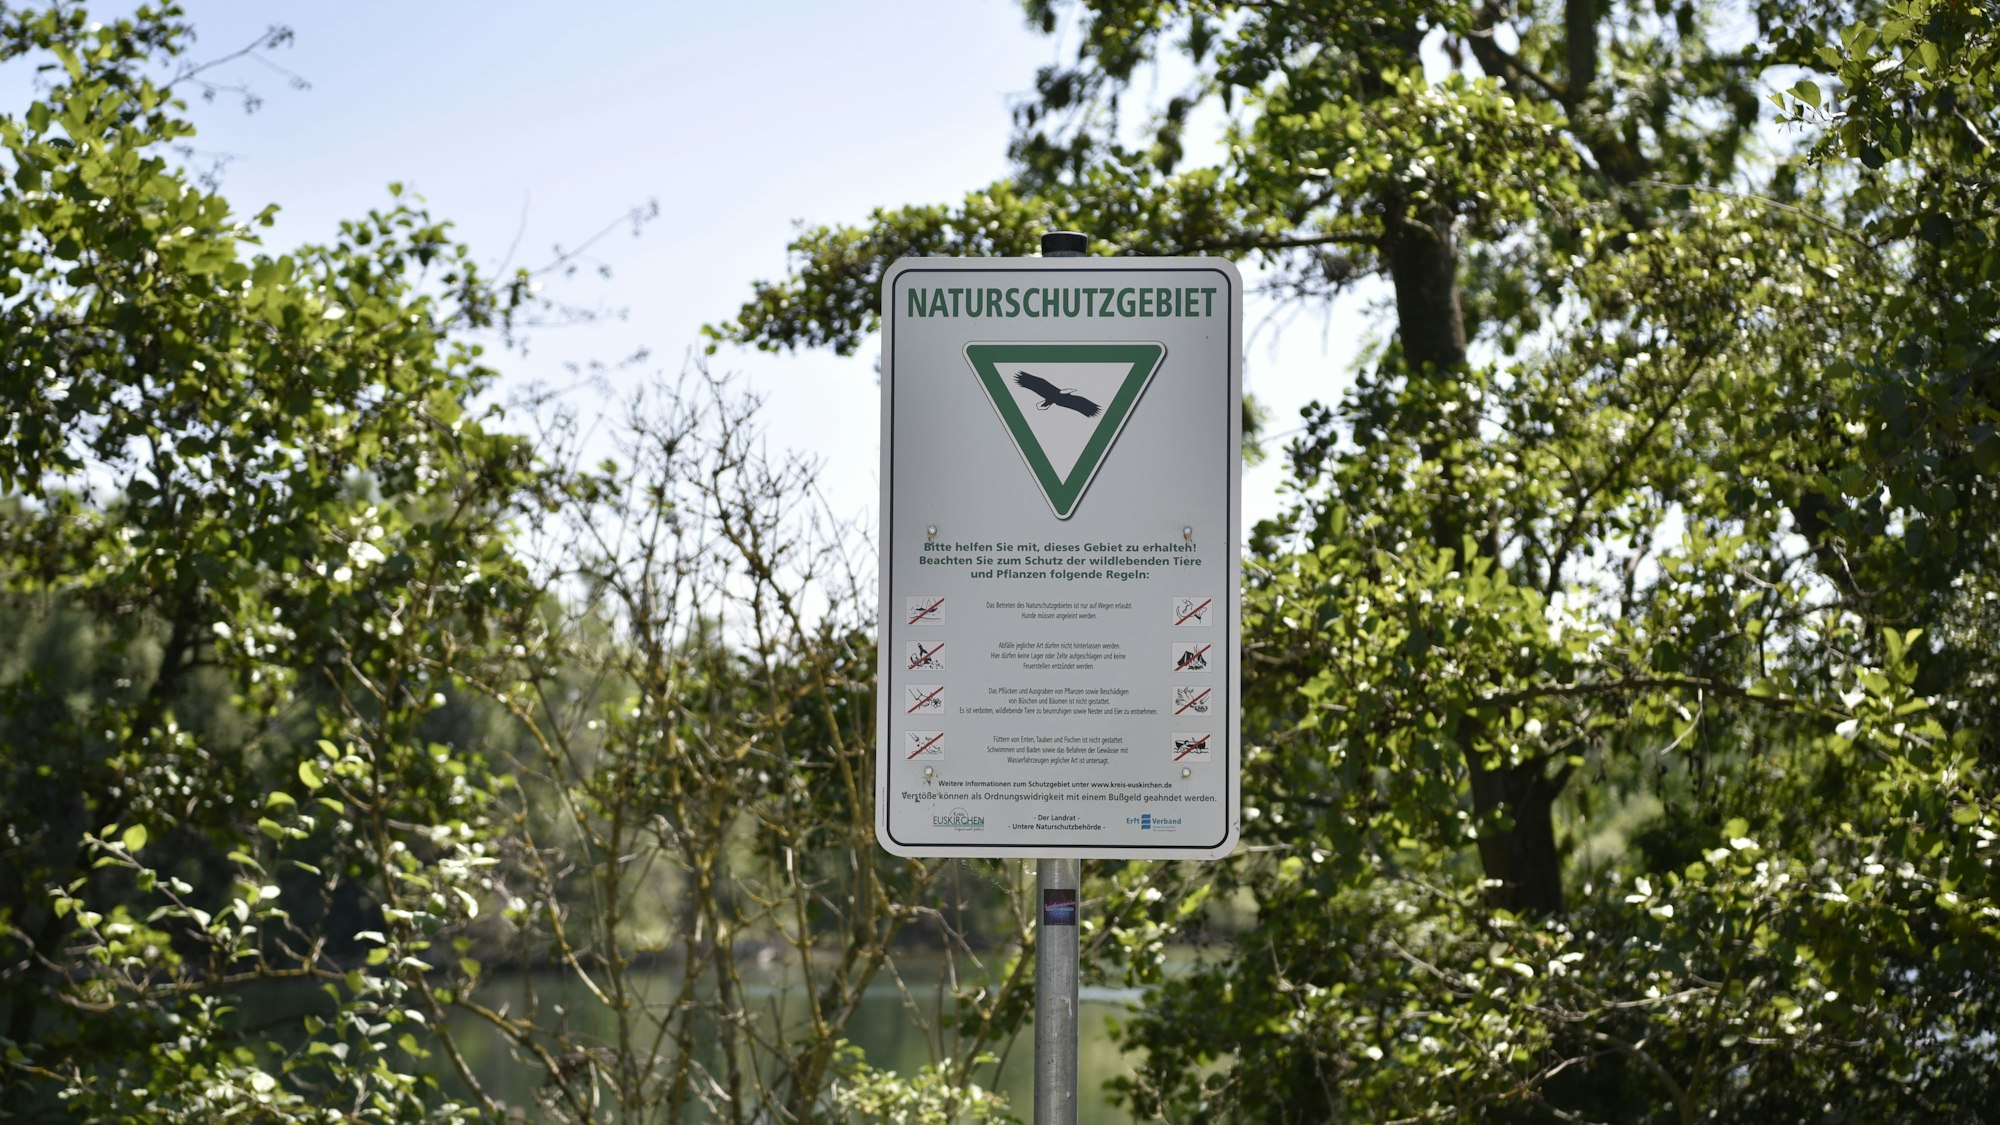 Ein Schild steht vor ein paar Bäumen, im Hintergrund ist Wasser zu sehen. Auf dem Schild steht „Naturschutzgebiet“. Darunter ist das Bild von einem Vogel in einem grünen Dreieck. Darunter wiederum ist eine Auflistung der geltenden Verhaltensregeln zu lesen.